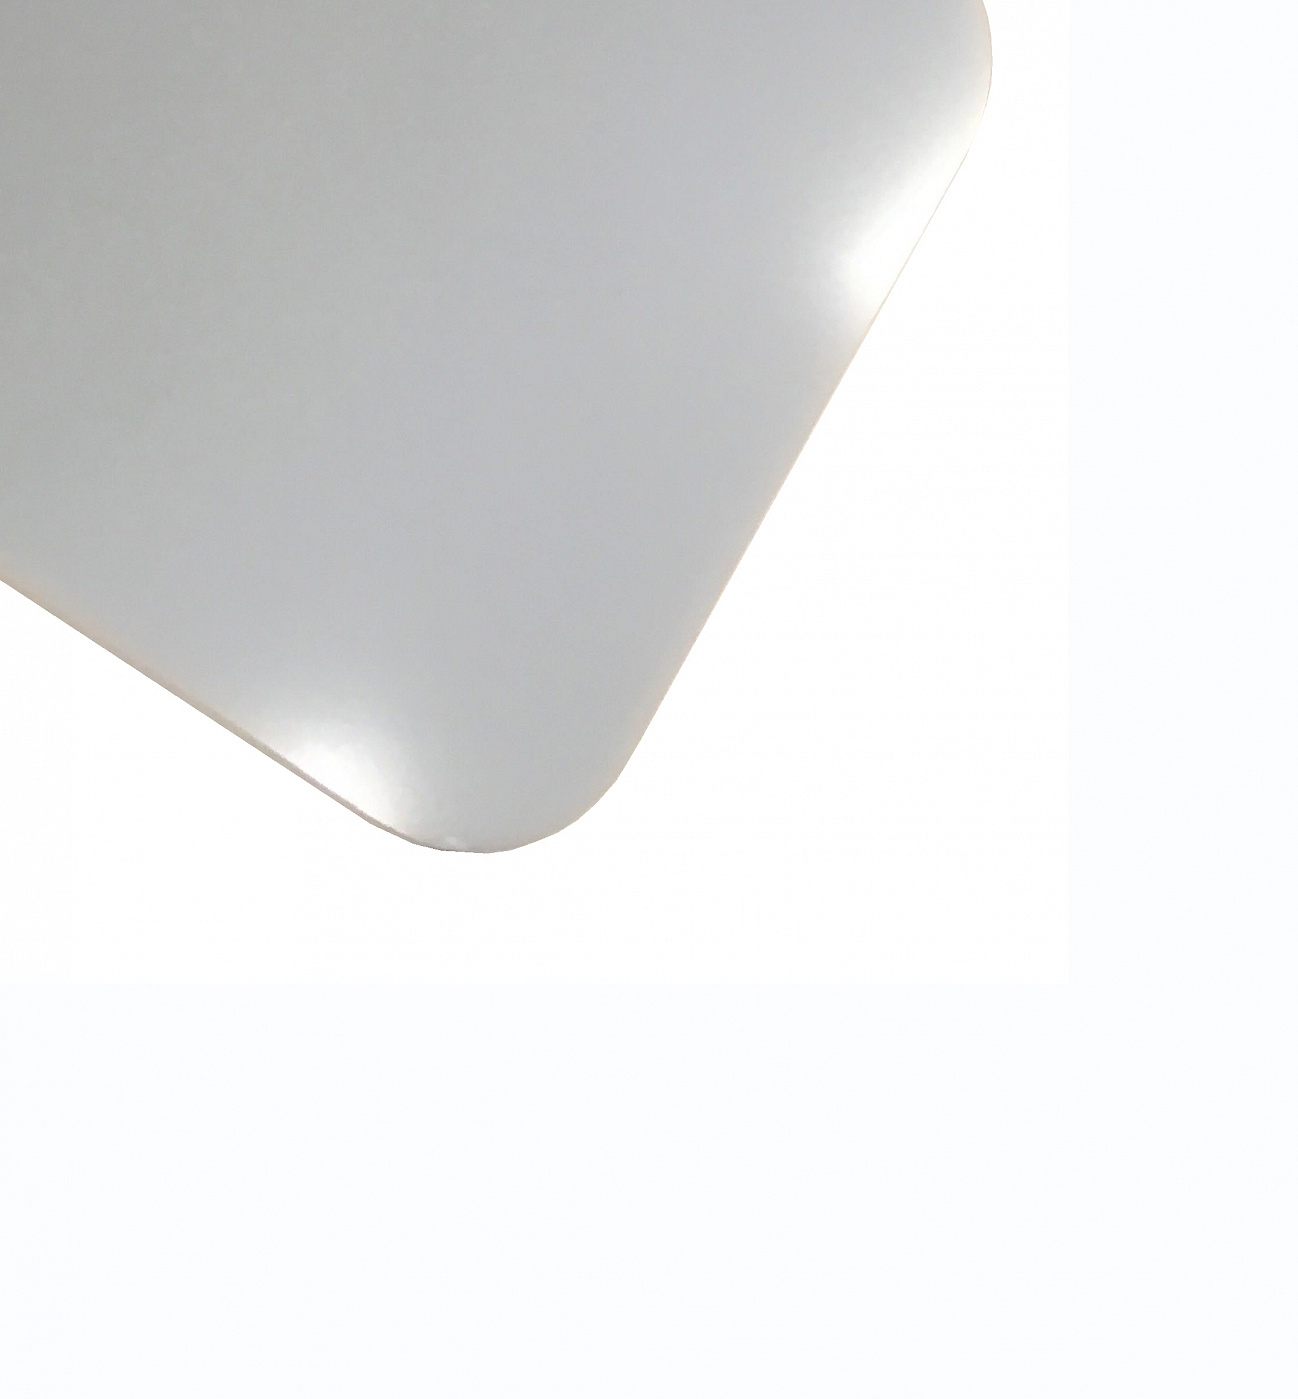 Планшет для пленэра из оргстекла 3 мм, под лист размера А4+, цвет белый Dec-9082000 - фото 1